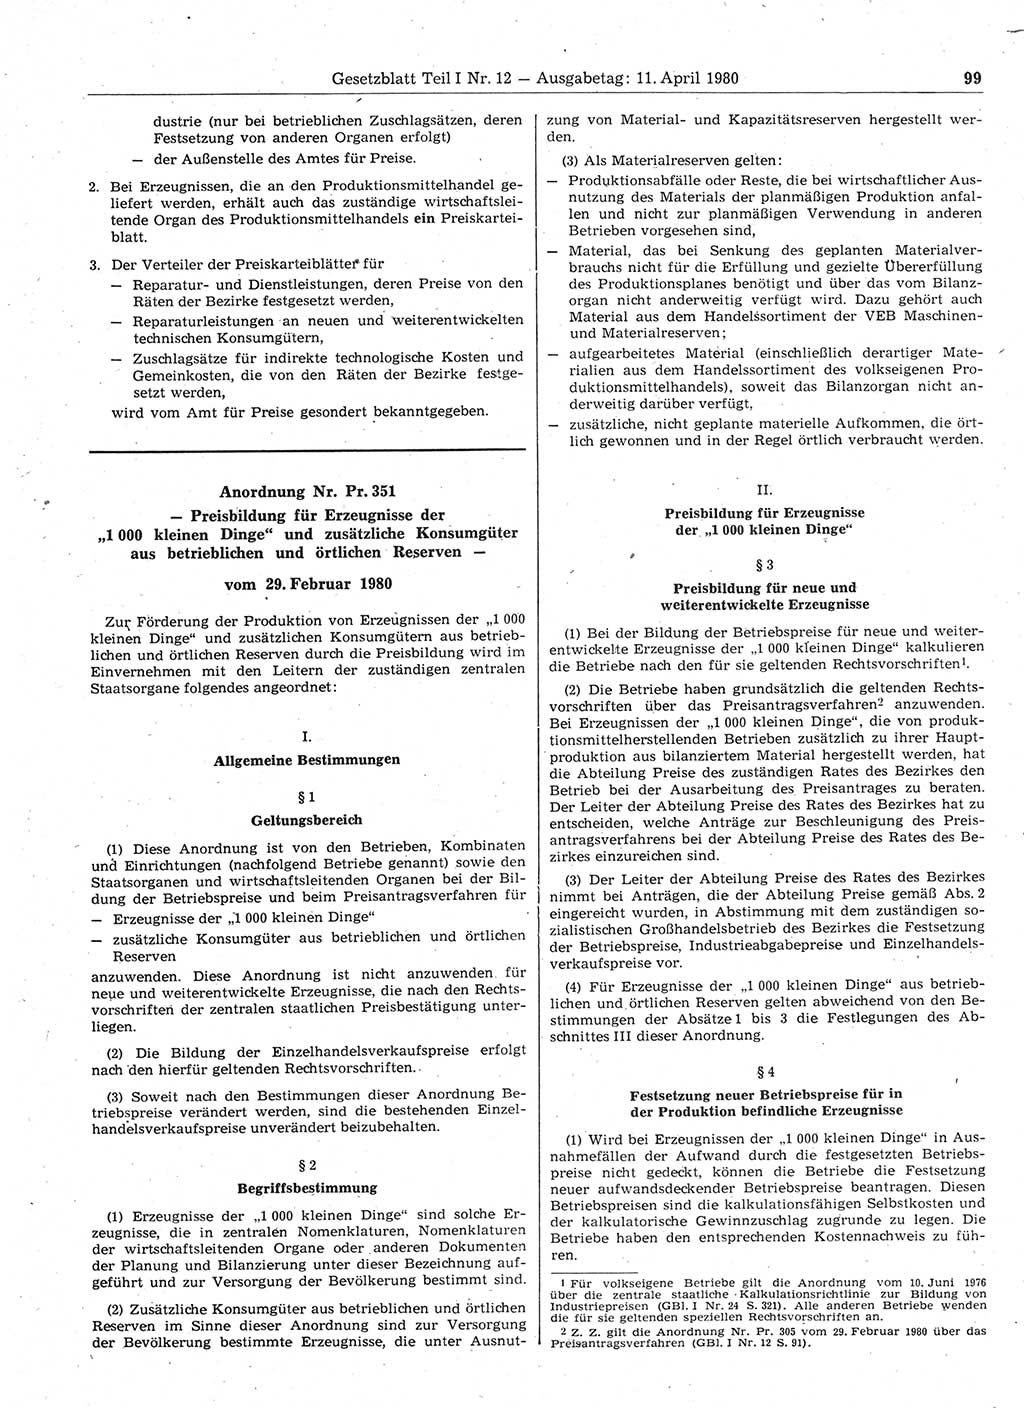 Gesetzblatt (GBl.) der Deutschen Demokratischen Republik (DDR) Teil Ⅰ 1980, Seite 99 (GBl. DDR Ⅰ 1980, S. 99)